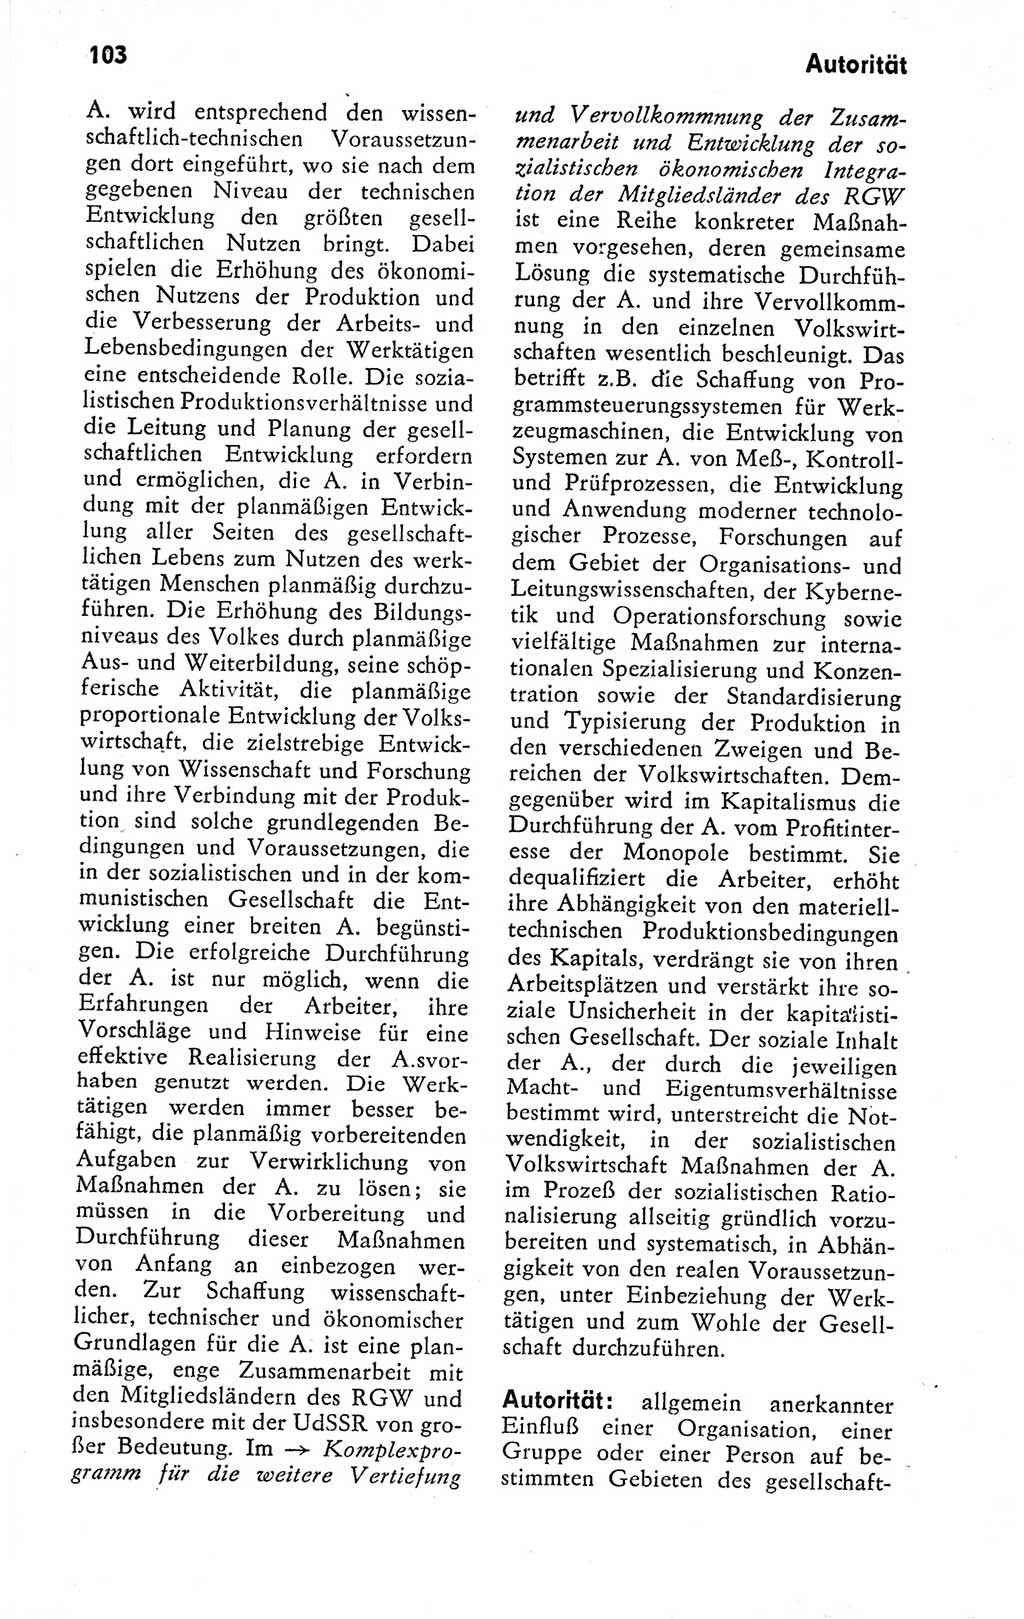 Kleines politisches Wörterbuch [Deutsche Demokratische Republik (DDR)] 1978, Seite 103 (Kl. pol. Wb. DDR 1978, S. 103)